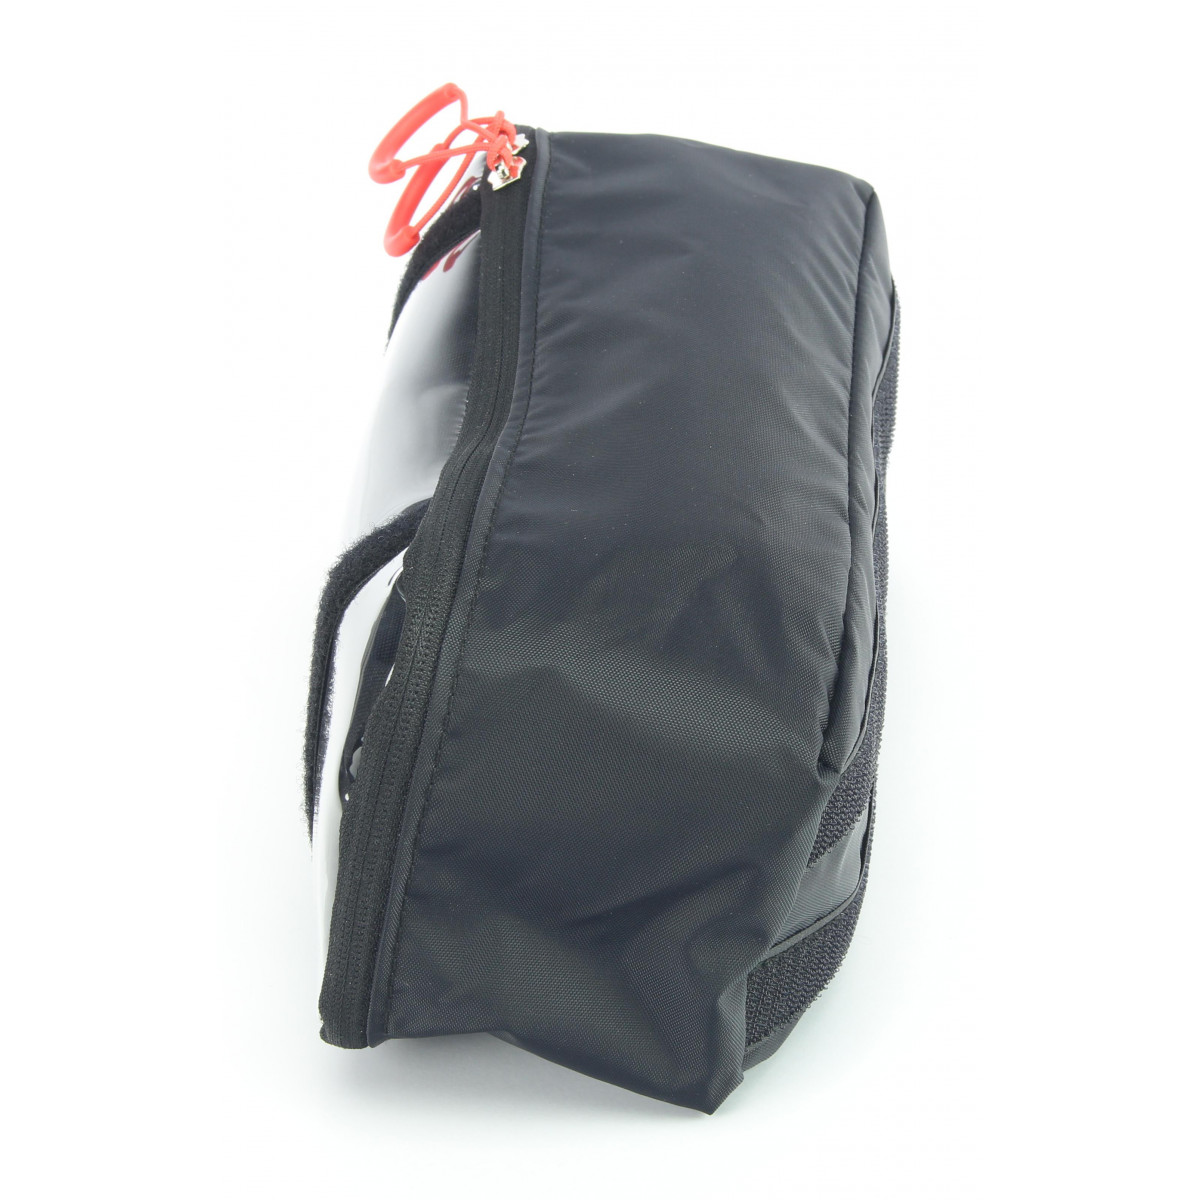 Pochette zippée doublée étanche pour le sac - Terika Atelier